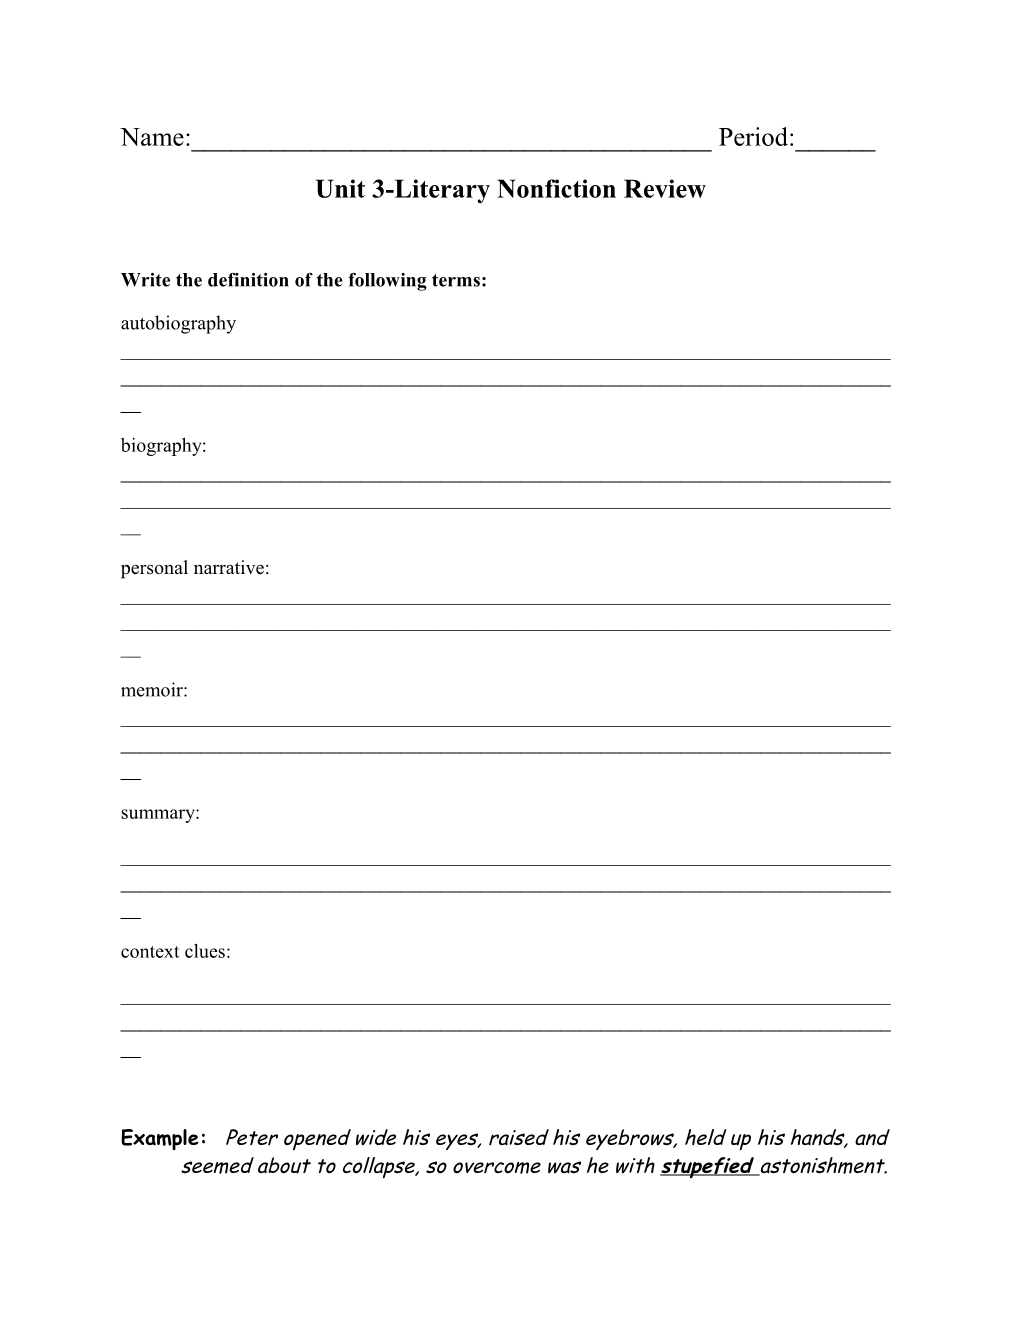 Unit 3-Literary Nonfiction Review